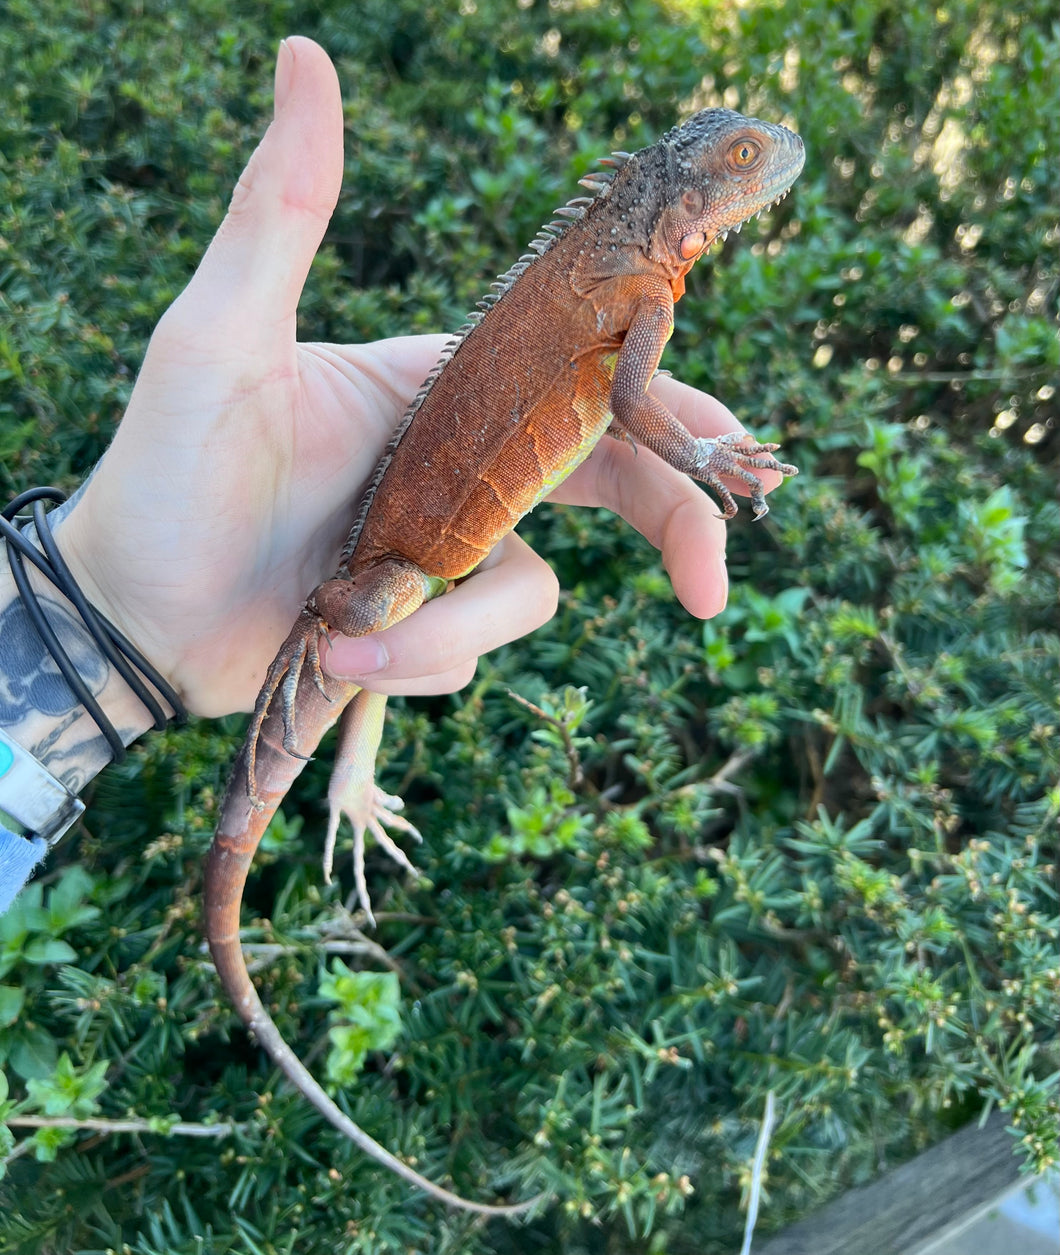 Juvenile Red Iguana